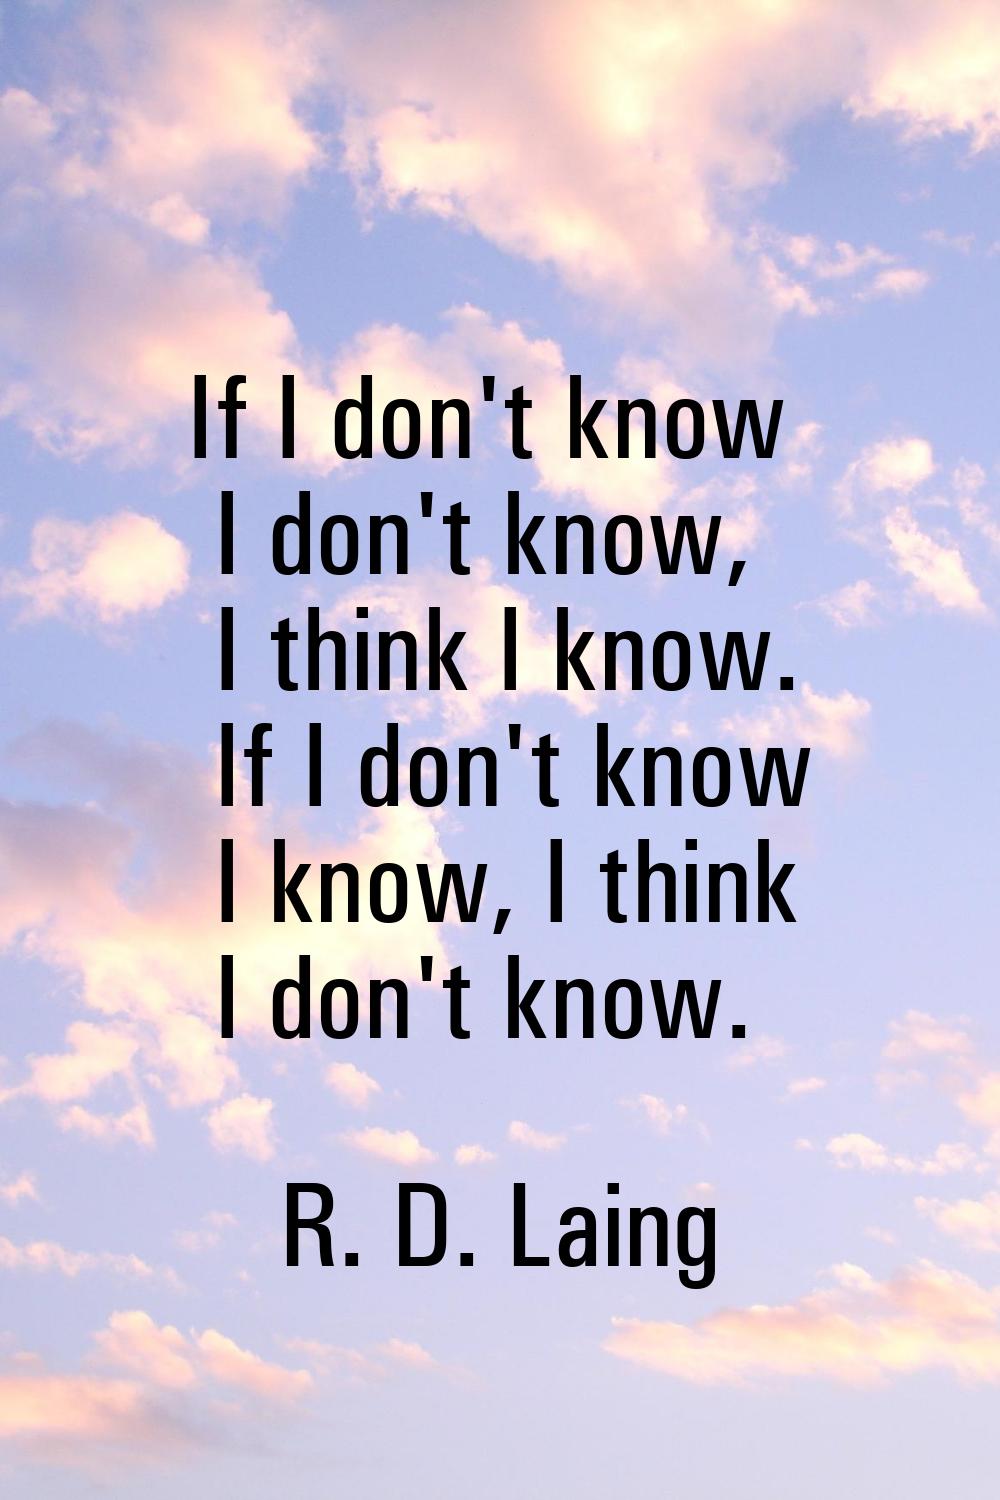 If I don't know I don't know, I think I know. If I don't know I know, I think I don't know.